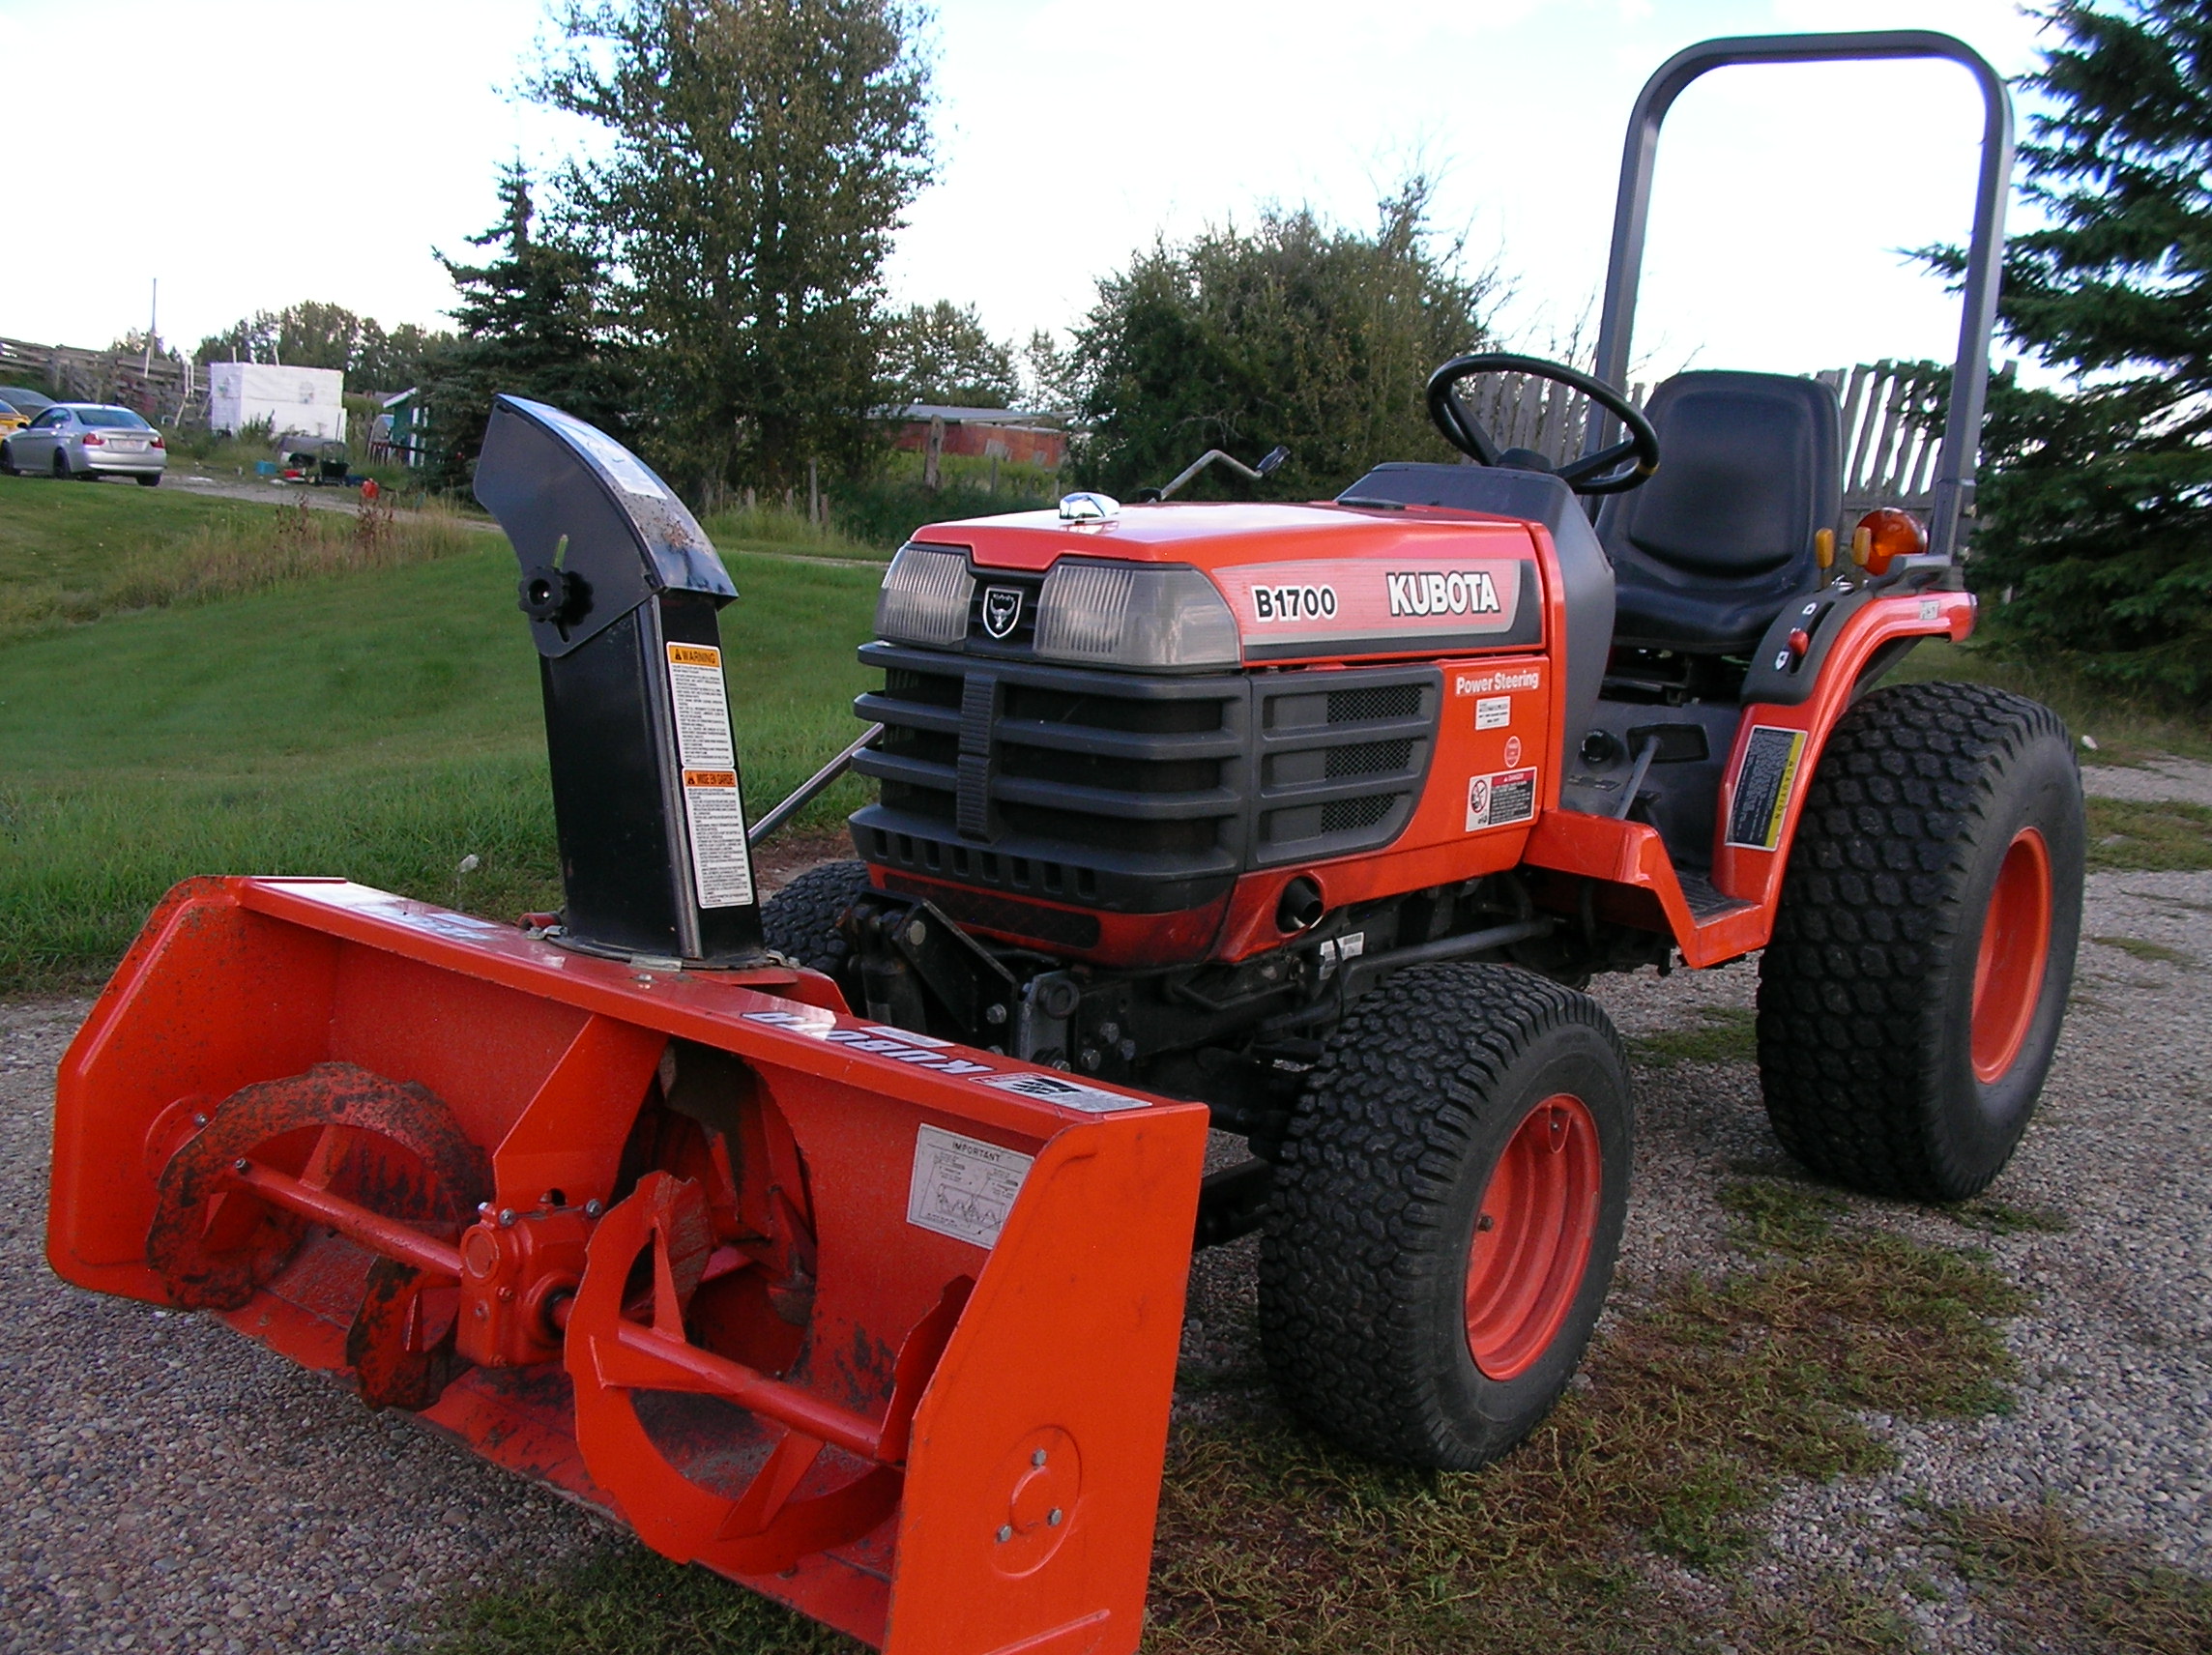 Good Used Tractors - SOLD # 929 Kubota B1700-4WD Diesel